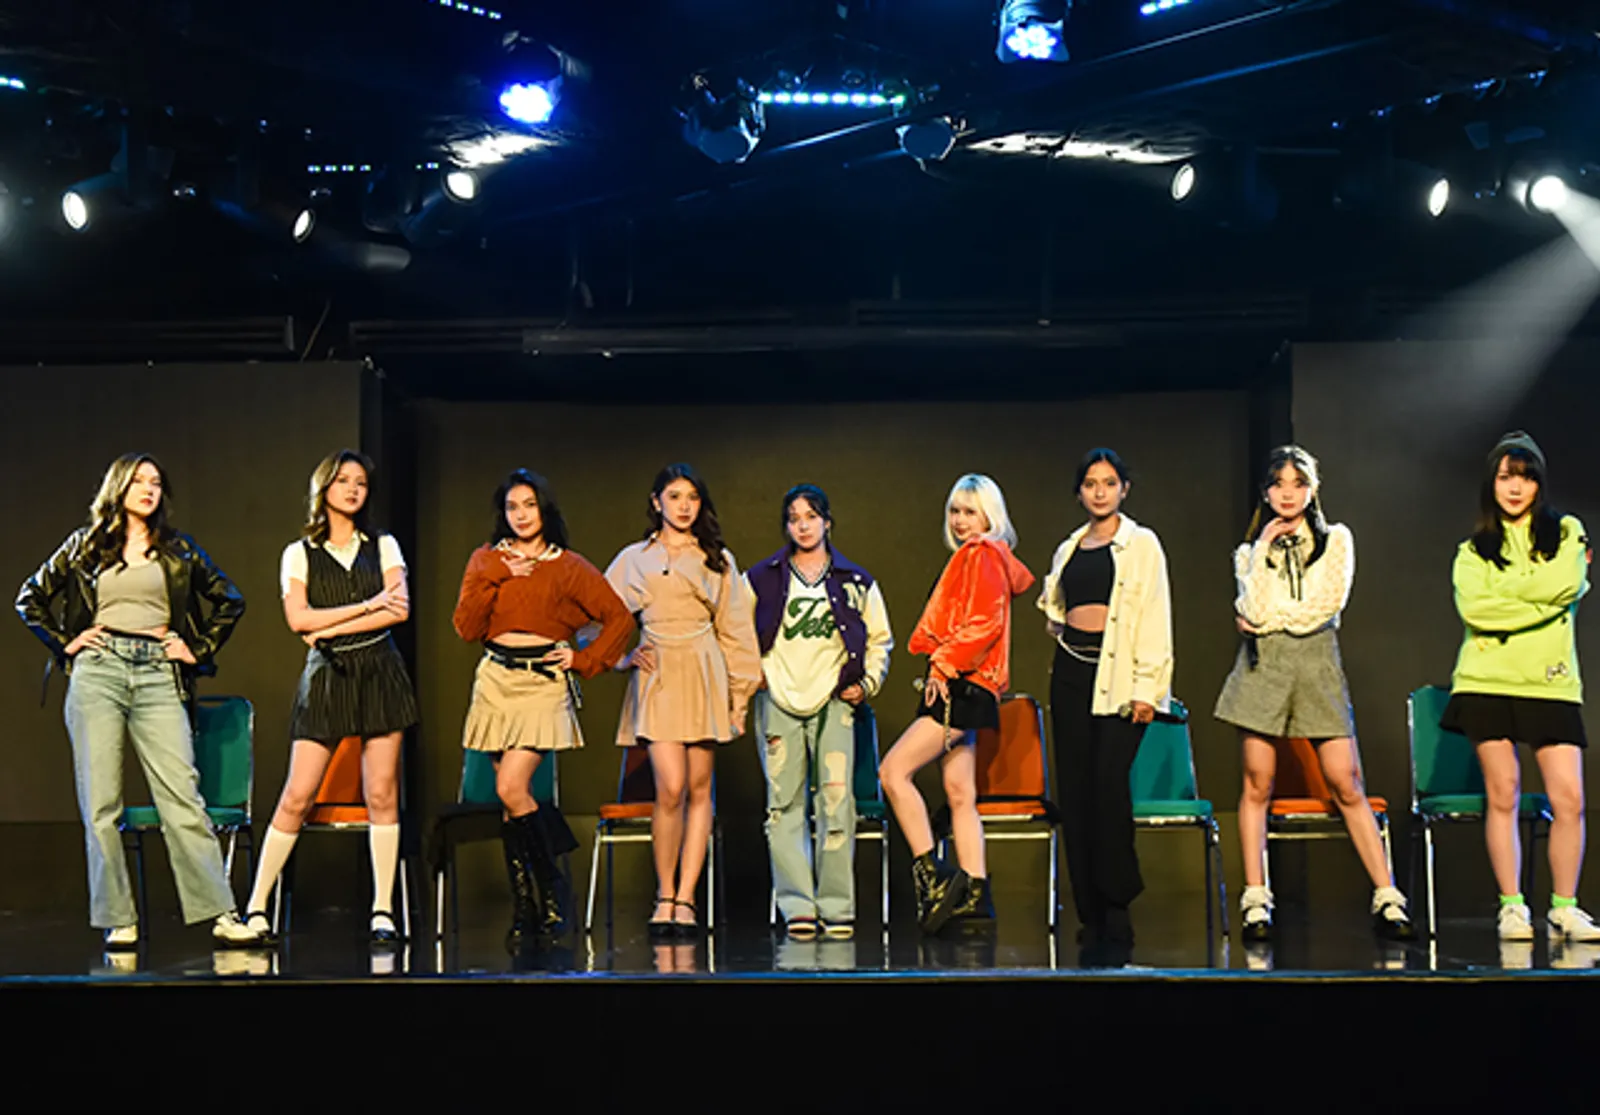 JKT48 Buka Audisi Generasi 11, Siap Bergabung?